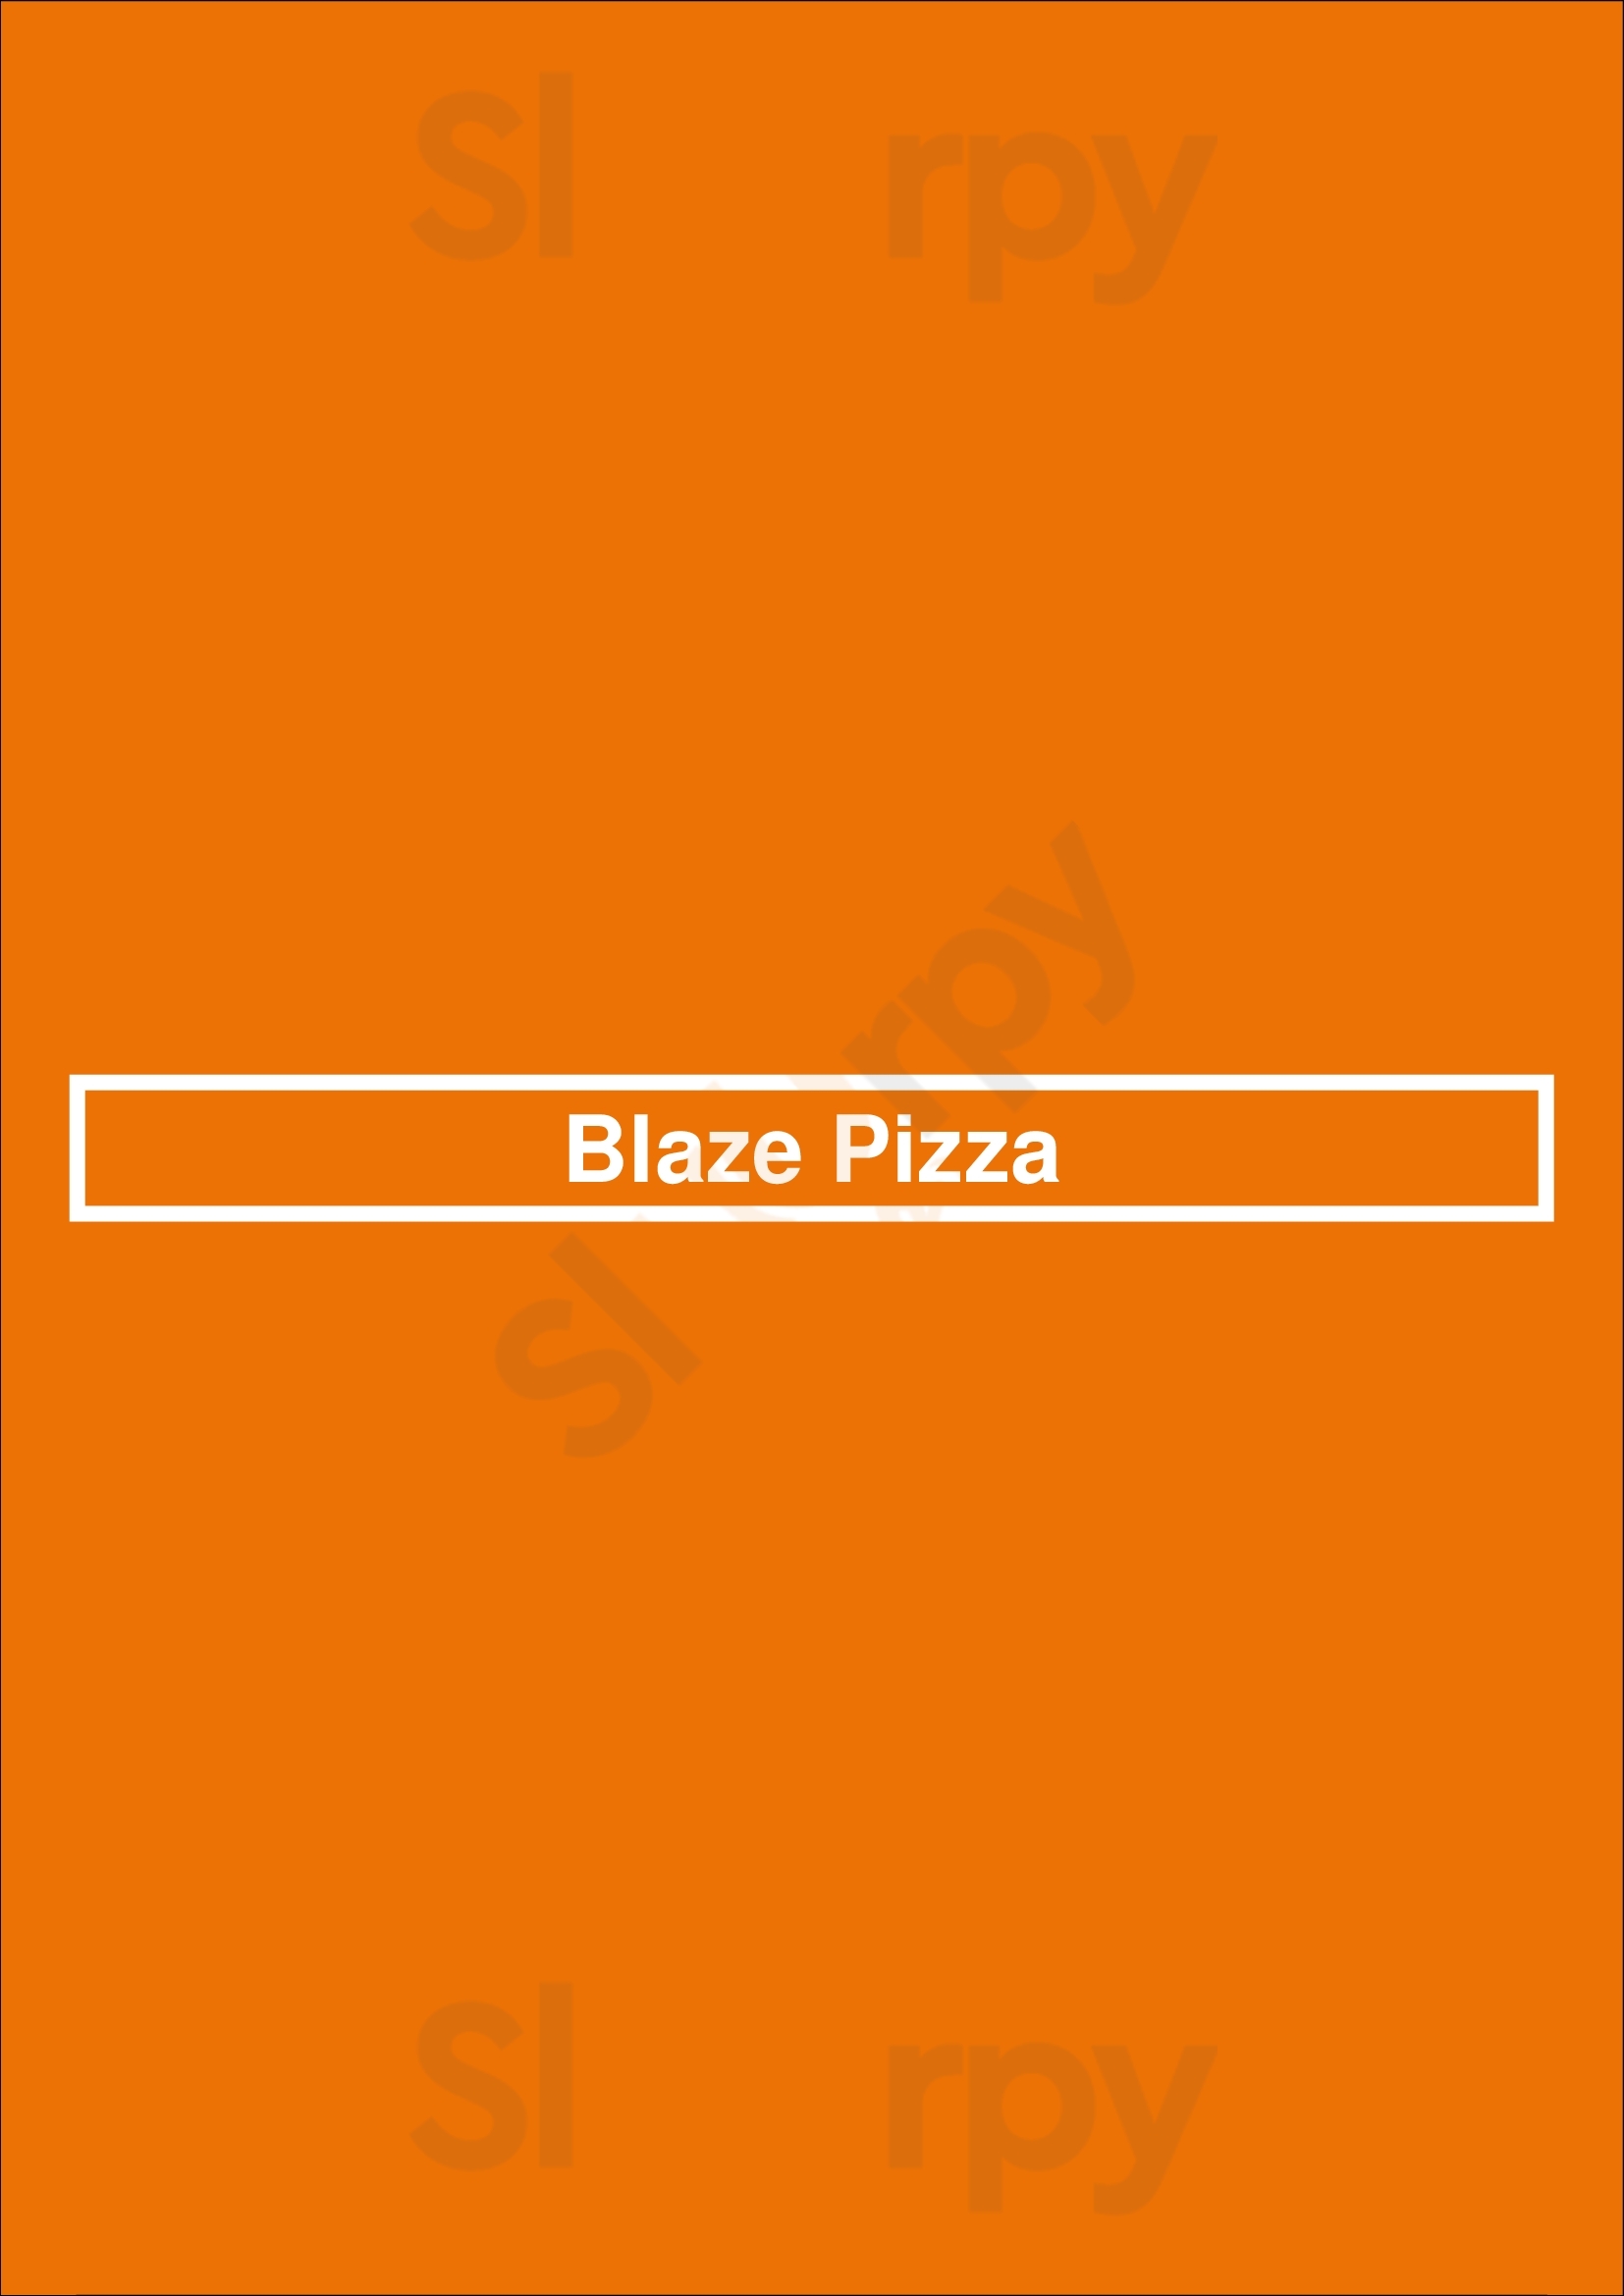 Blaze Pizza Fort Worth Menu - 1